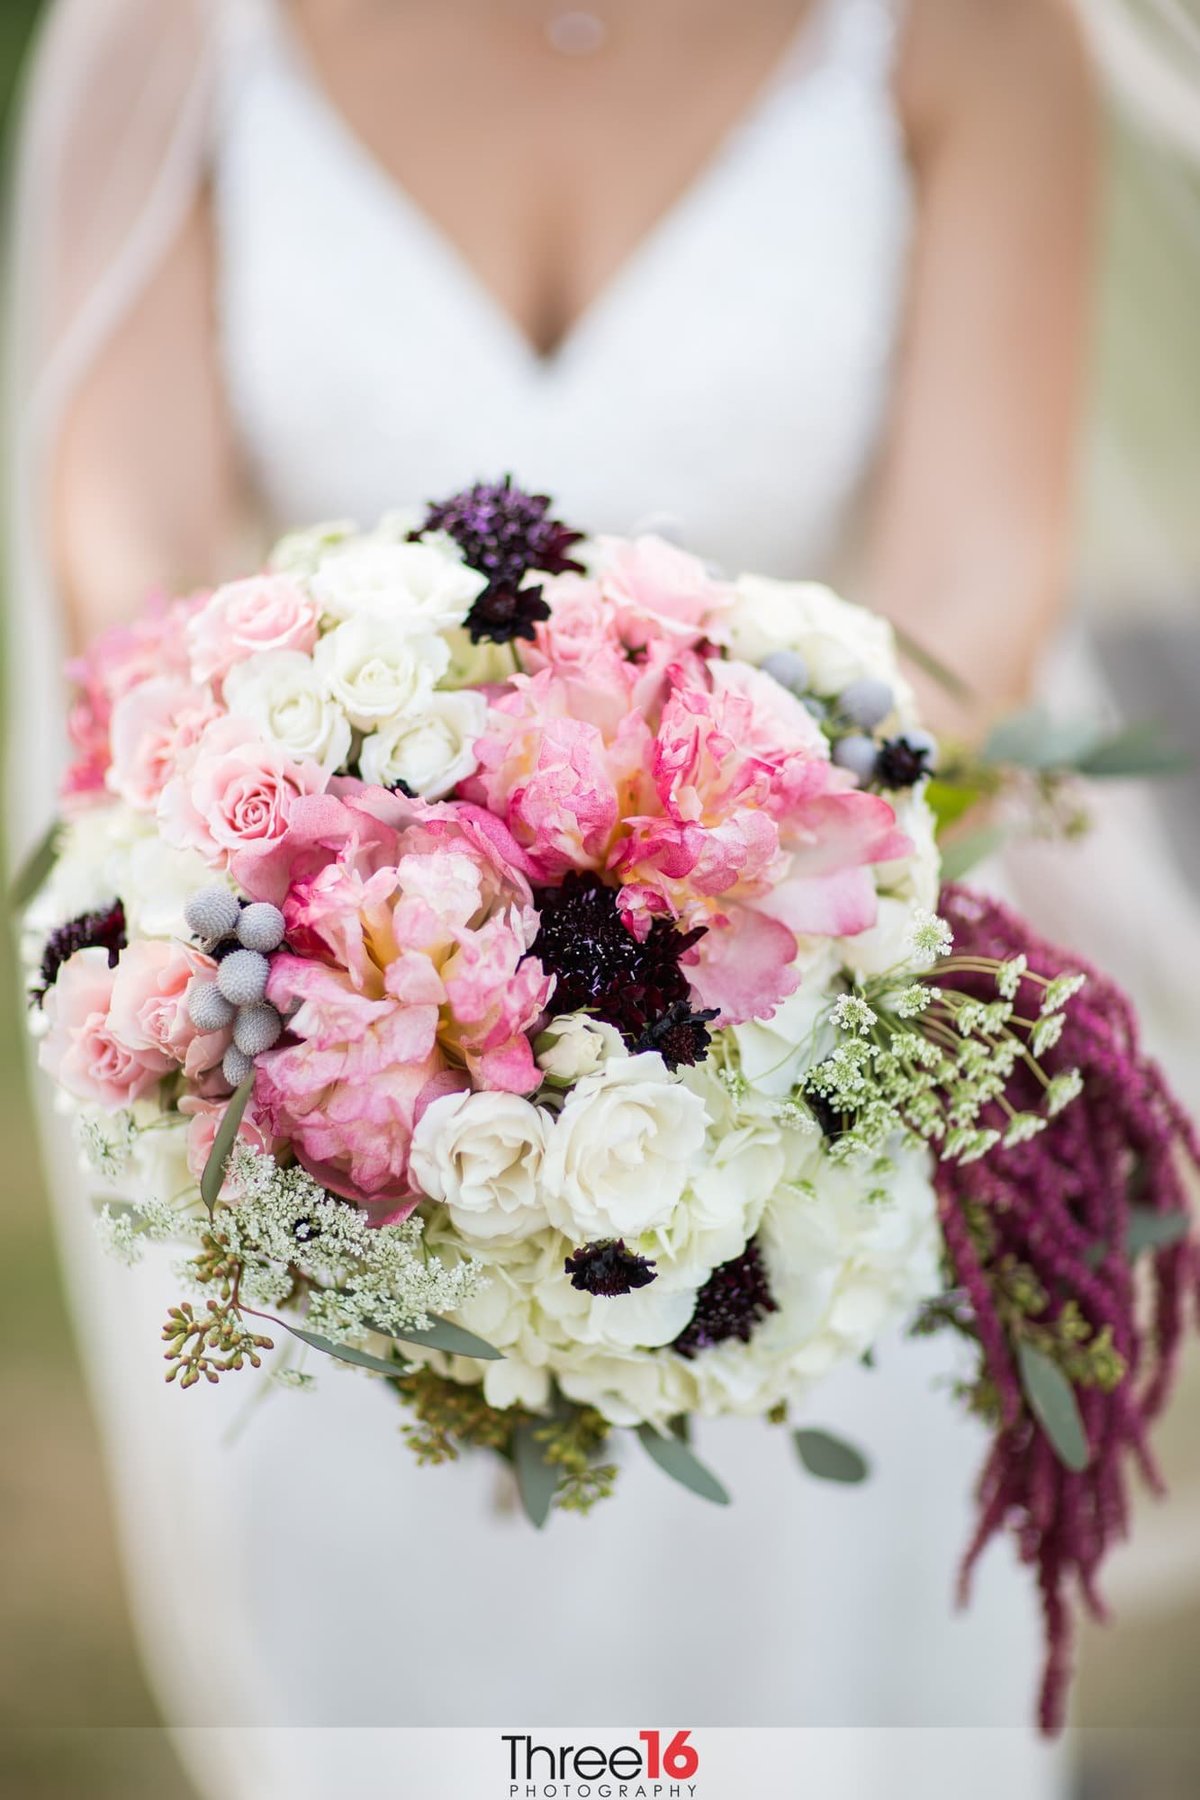 A bride's gorgeous bouquet